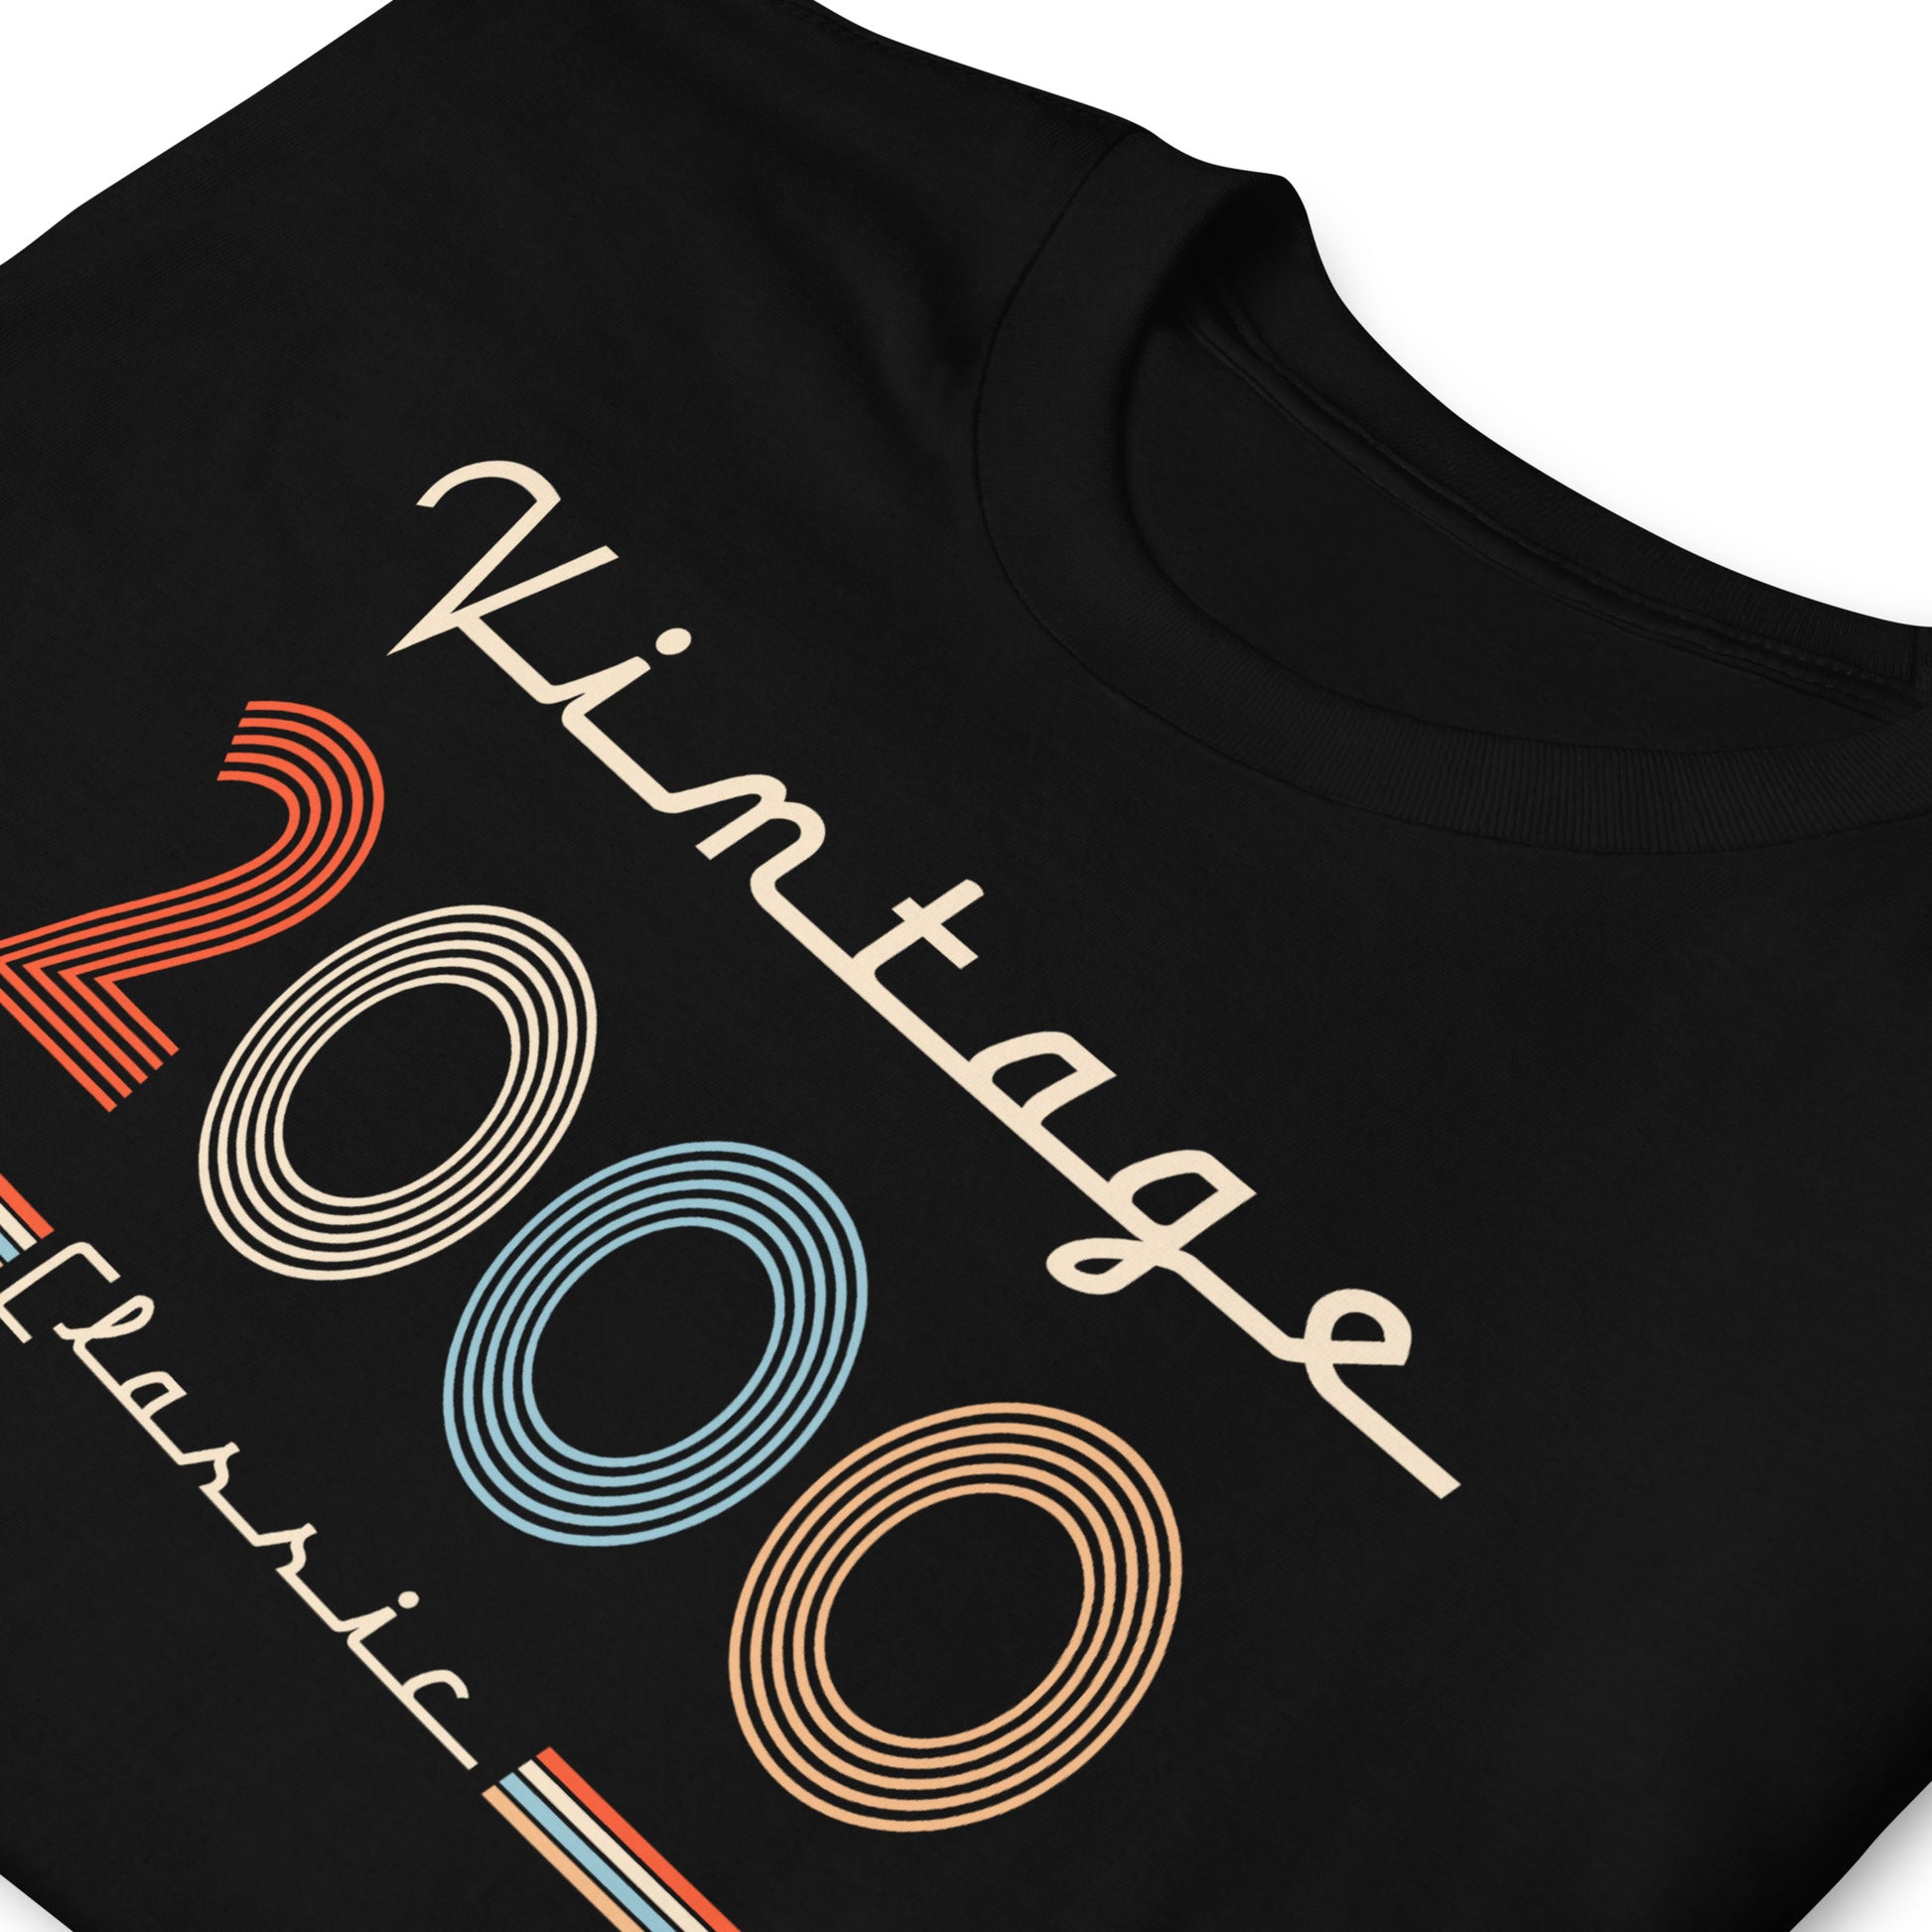 Camiseta 2000 - Vintage Classic - Cumpleaños